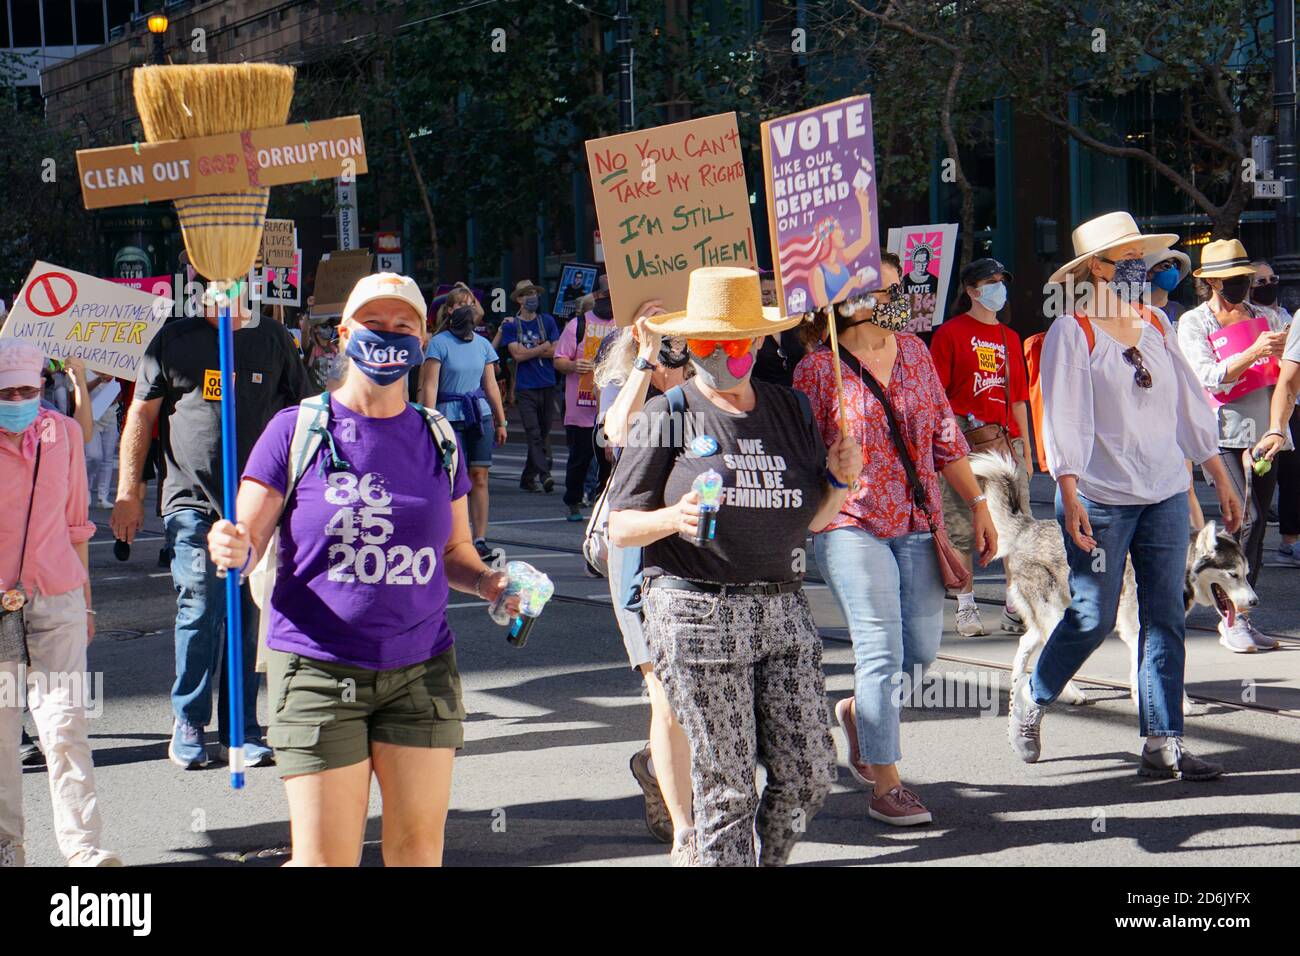 17 ottobre 2020. La marcia delle donne di San Francisco prima delle elezioni presidenziali degli Stati Uniti. I manifestanti portano i segni del voto, dell’anti-Trump e dei diritti delle donne. Foto Stock